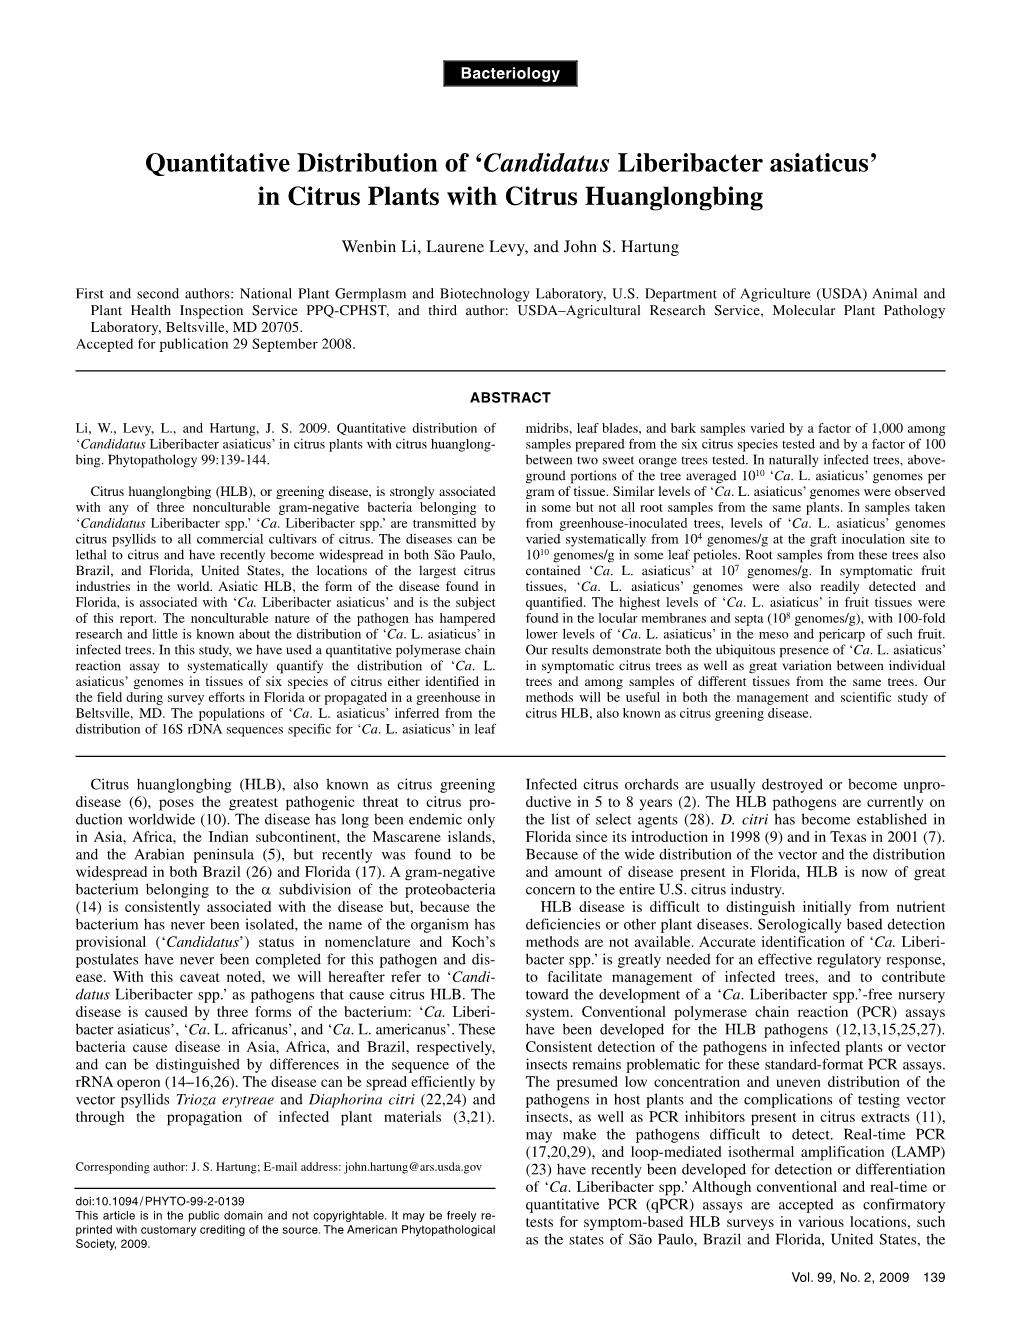 Quantitative Distribution of 'Candidatus Liberibacter Asiaticus'